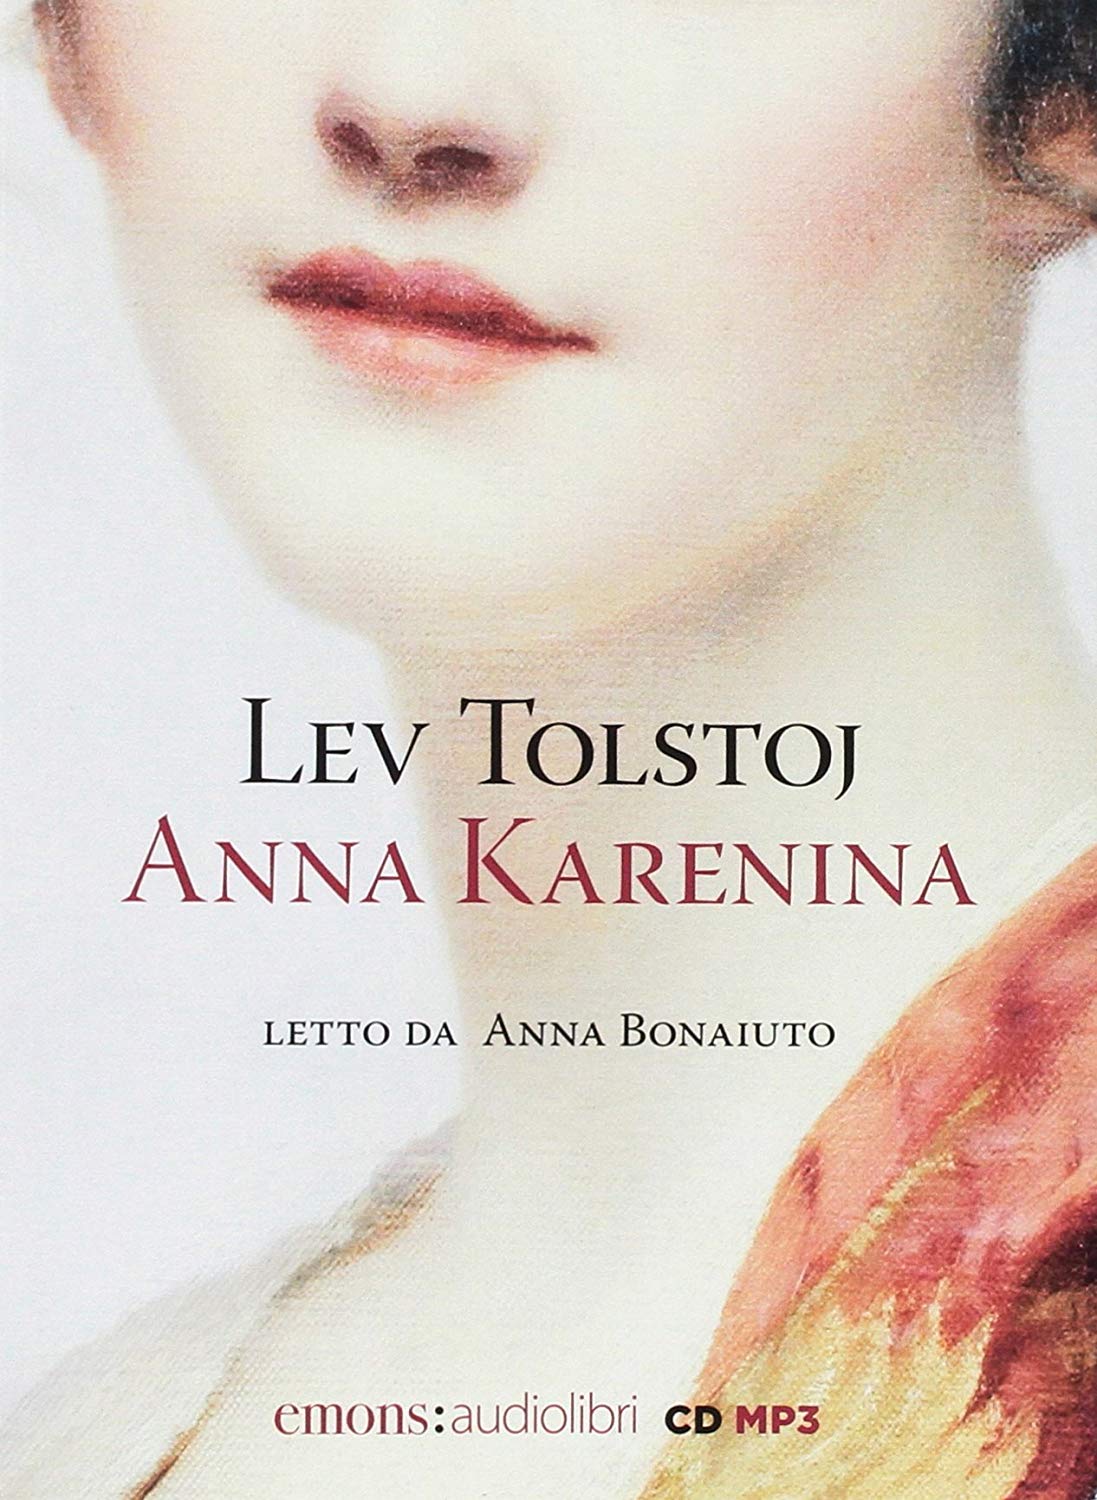 Audiolibro Tolstoj Lev - Tolstoj, Lev (Audiolibro) NUOVO SIGILLATO, EDIZIONE DEL 08/11/2017 SUBITO DISPONIBILE